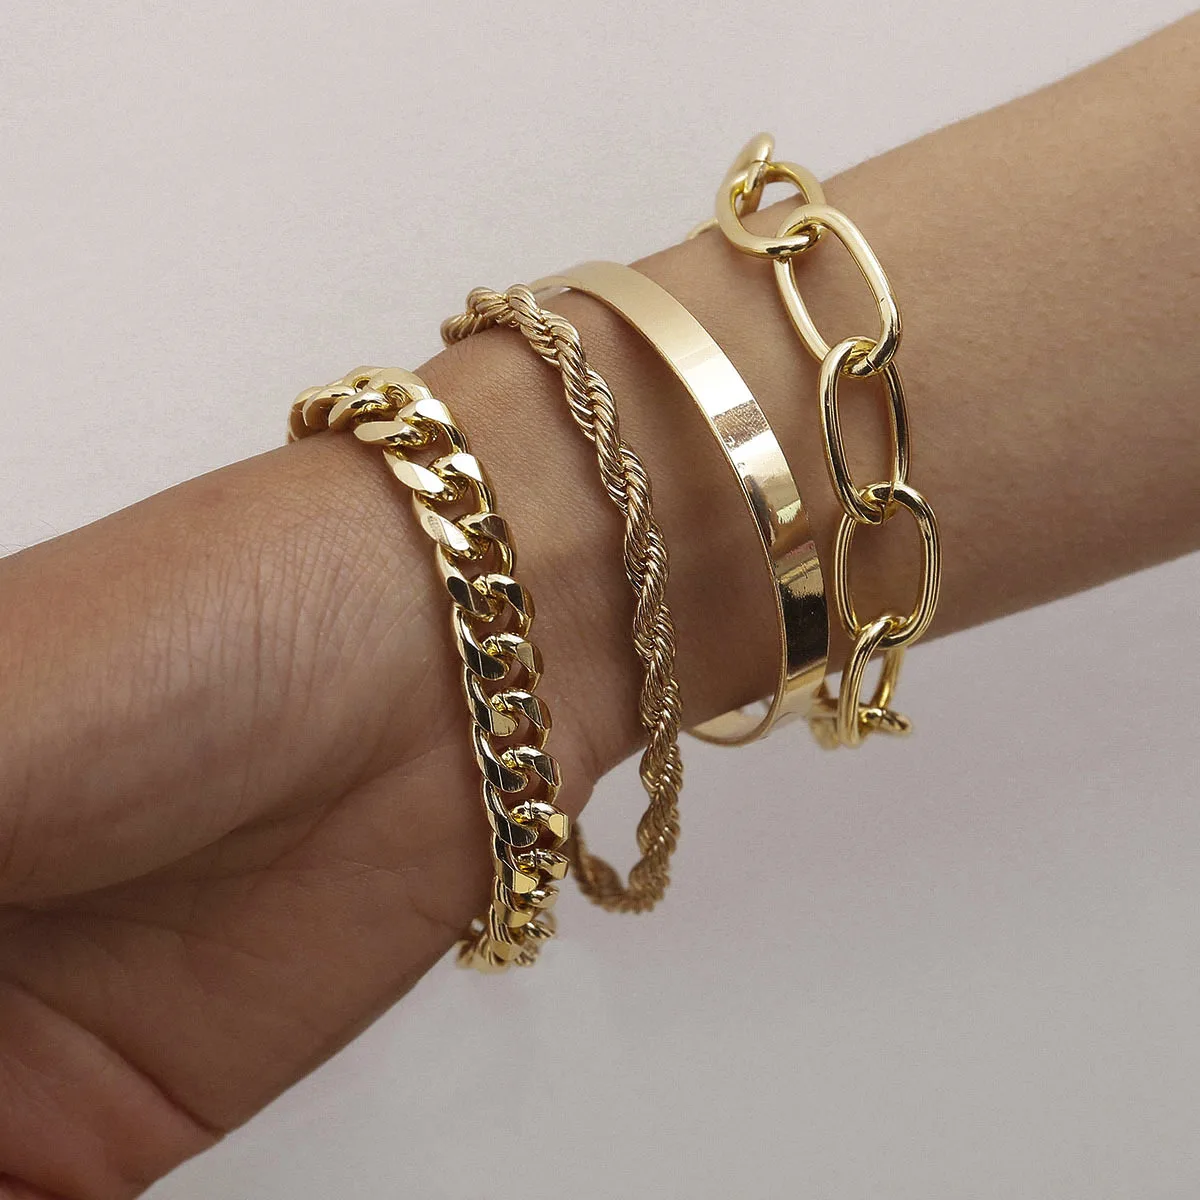 Buy maket Unique Charm Retro Cuff Bracelet for Women Gold Color